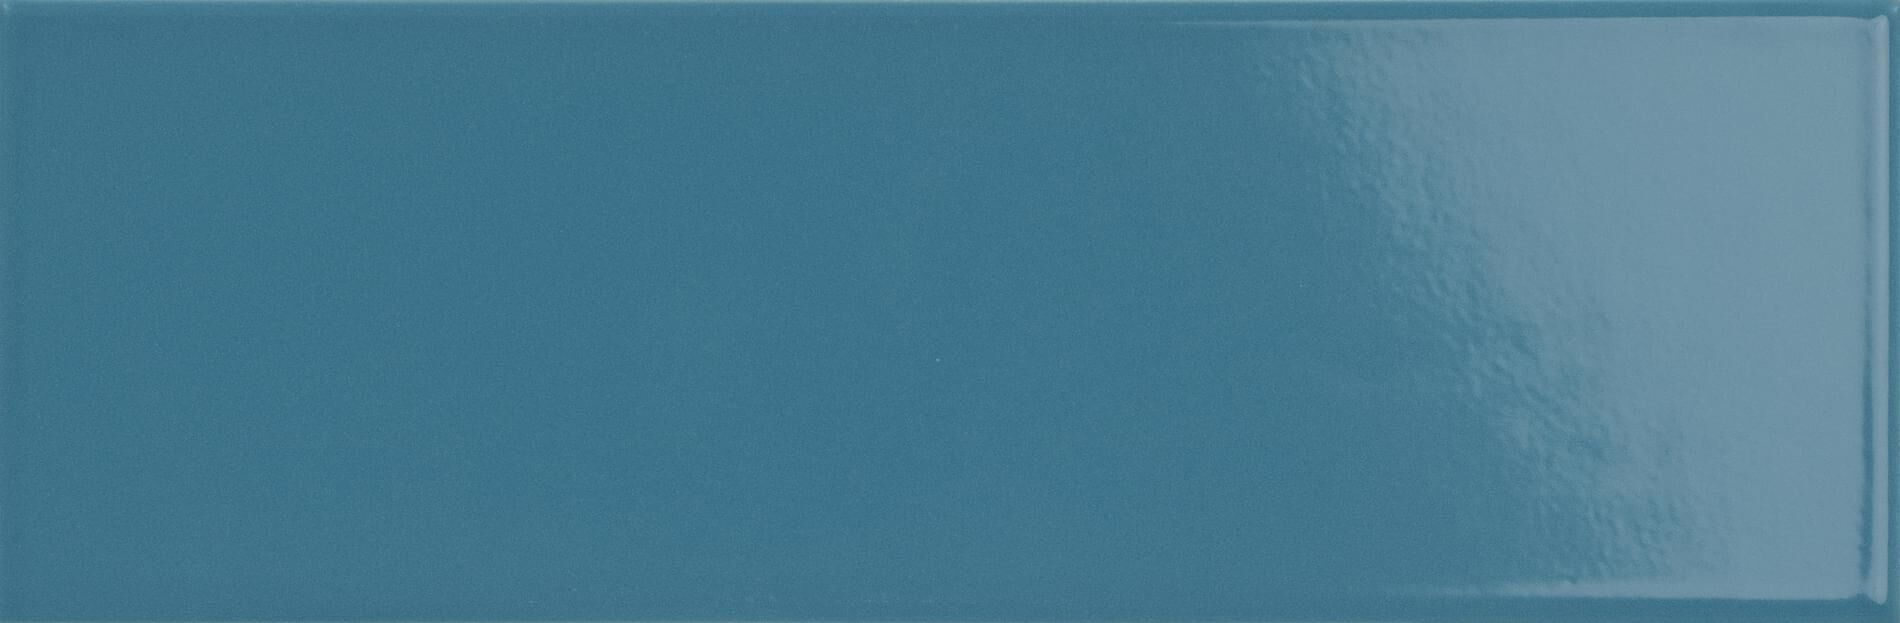 Керамическая плитка Керамин Harmony Crayon Blue Синяя Глянцевая Настенная плитка 10x30